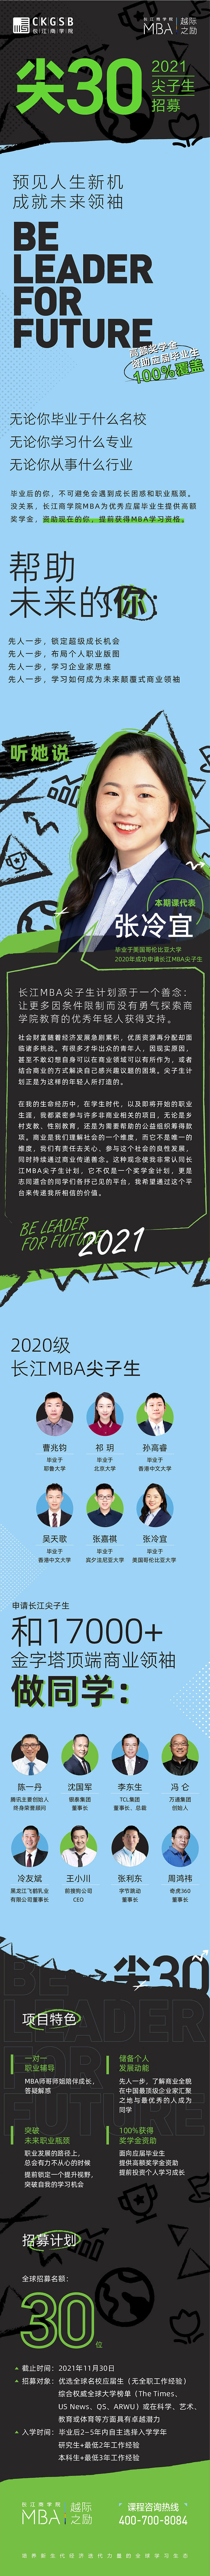 连接梦想的两端——现在的你和未来的商业领袖 | 长江商学院MBA尖子生招募 - 2